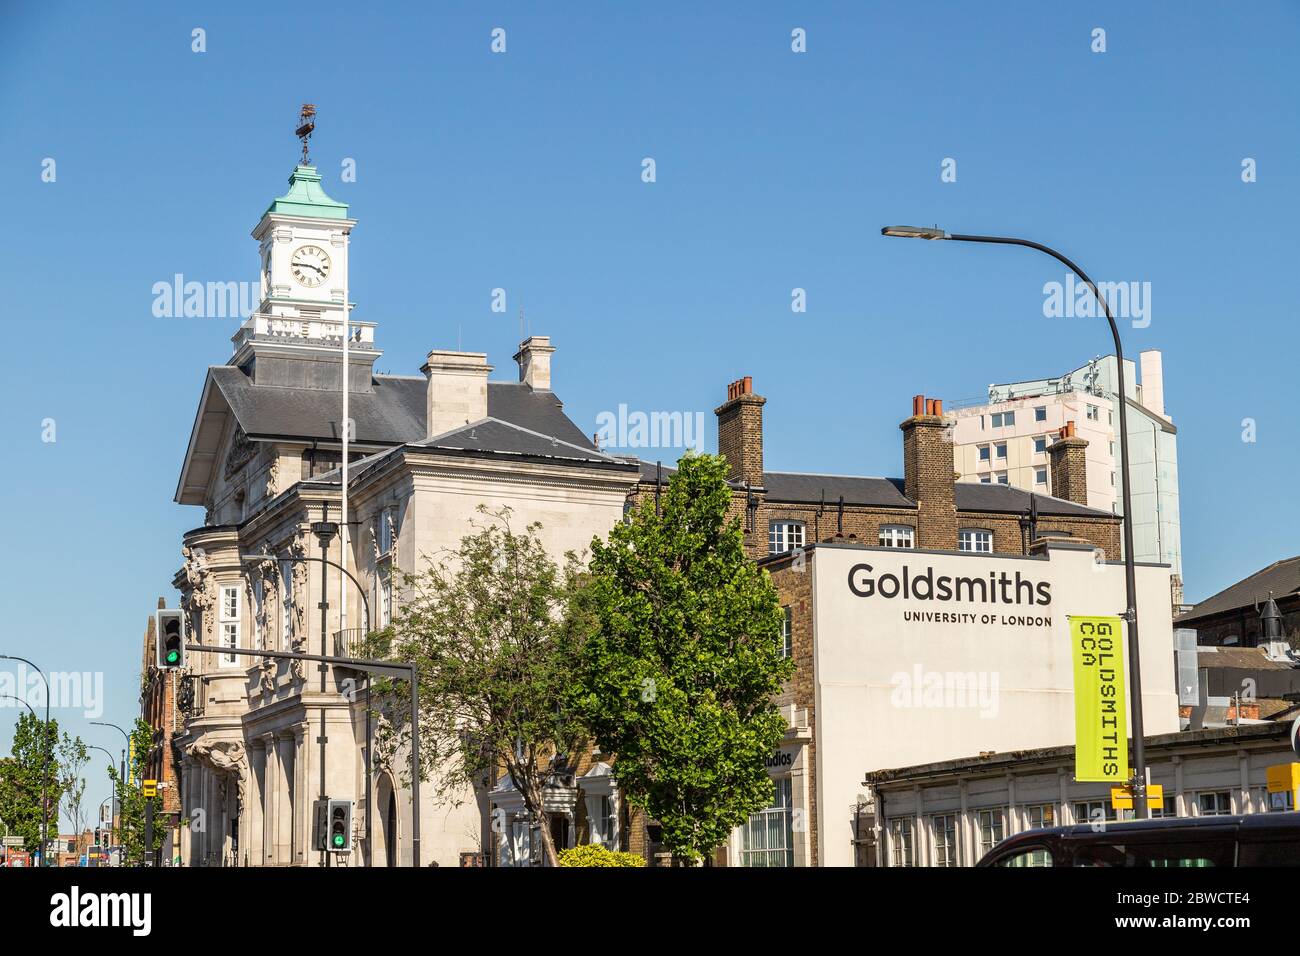 LONDRA, UK - 30 MAGGIO 2020: L'esterno degli edifici che fanno parte della Goldsmiths University di Londra. Foto Stock